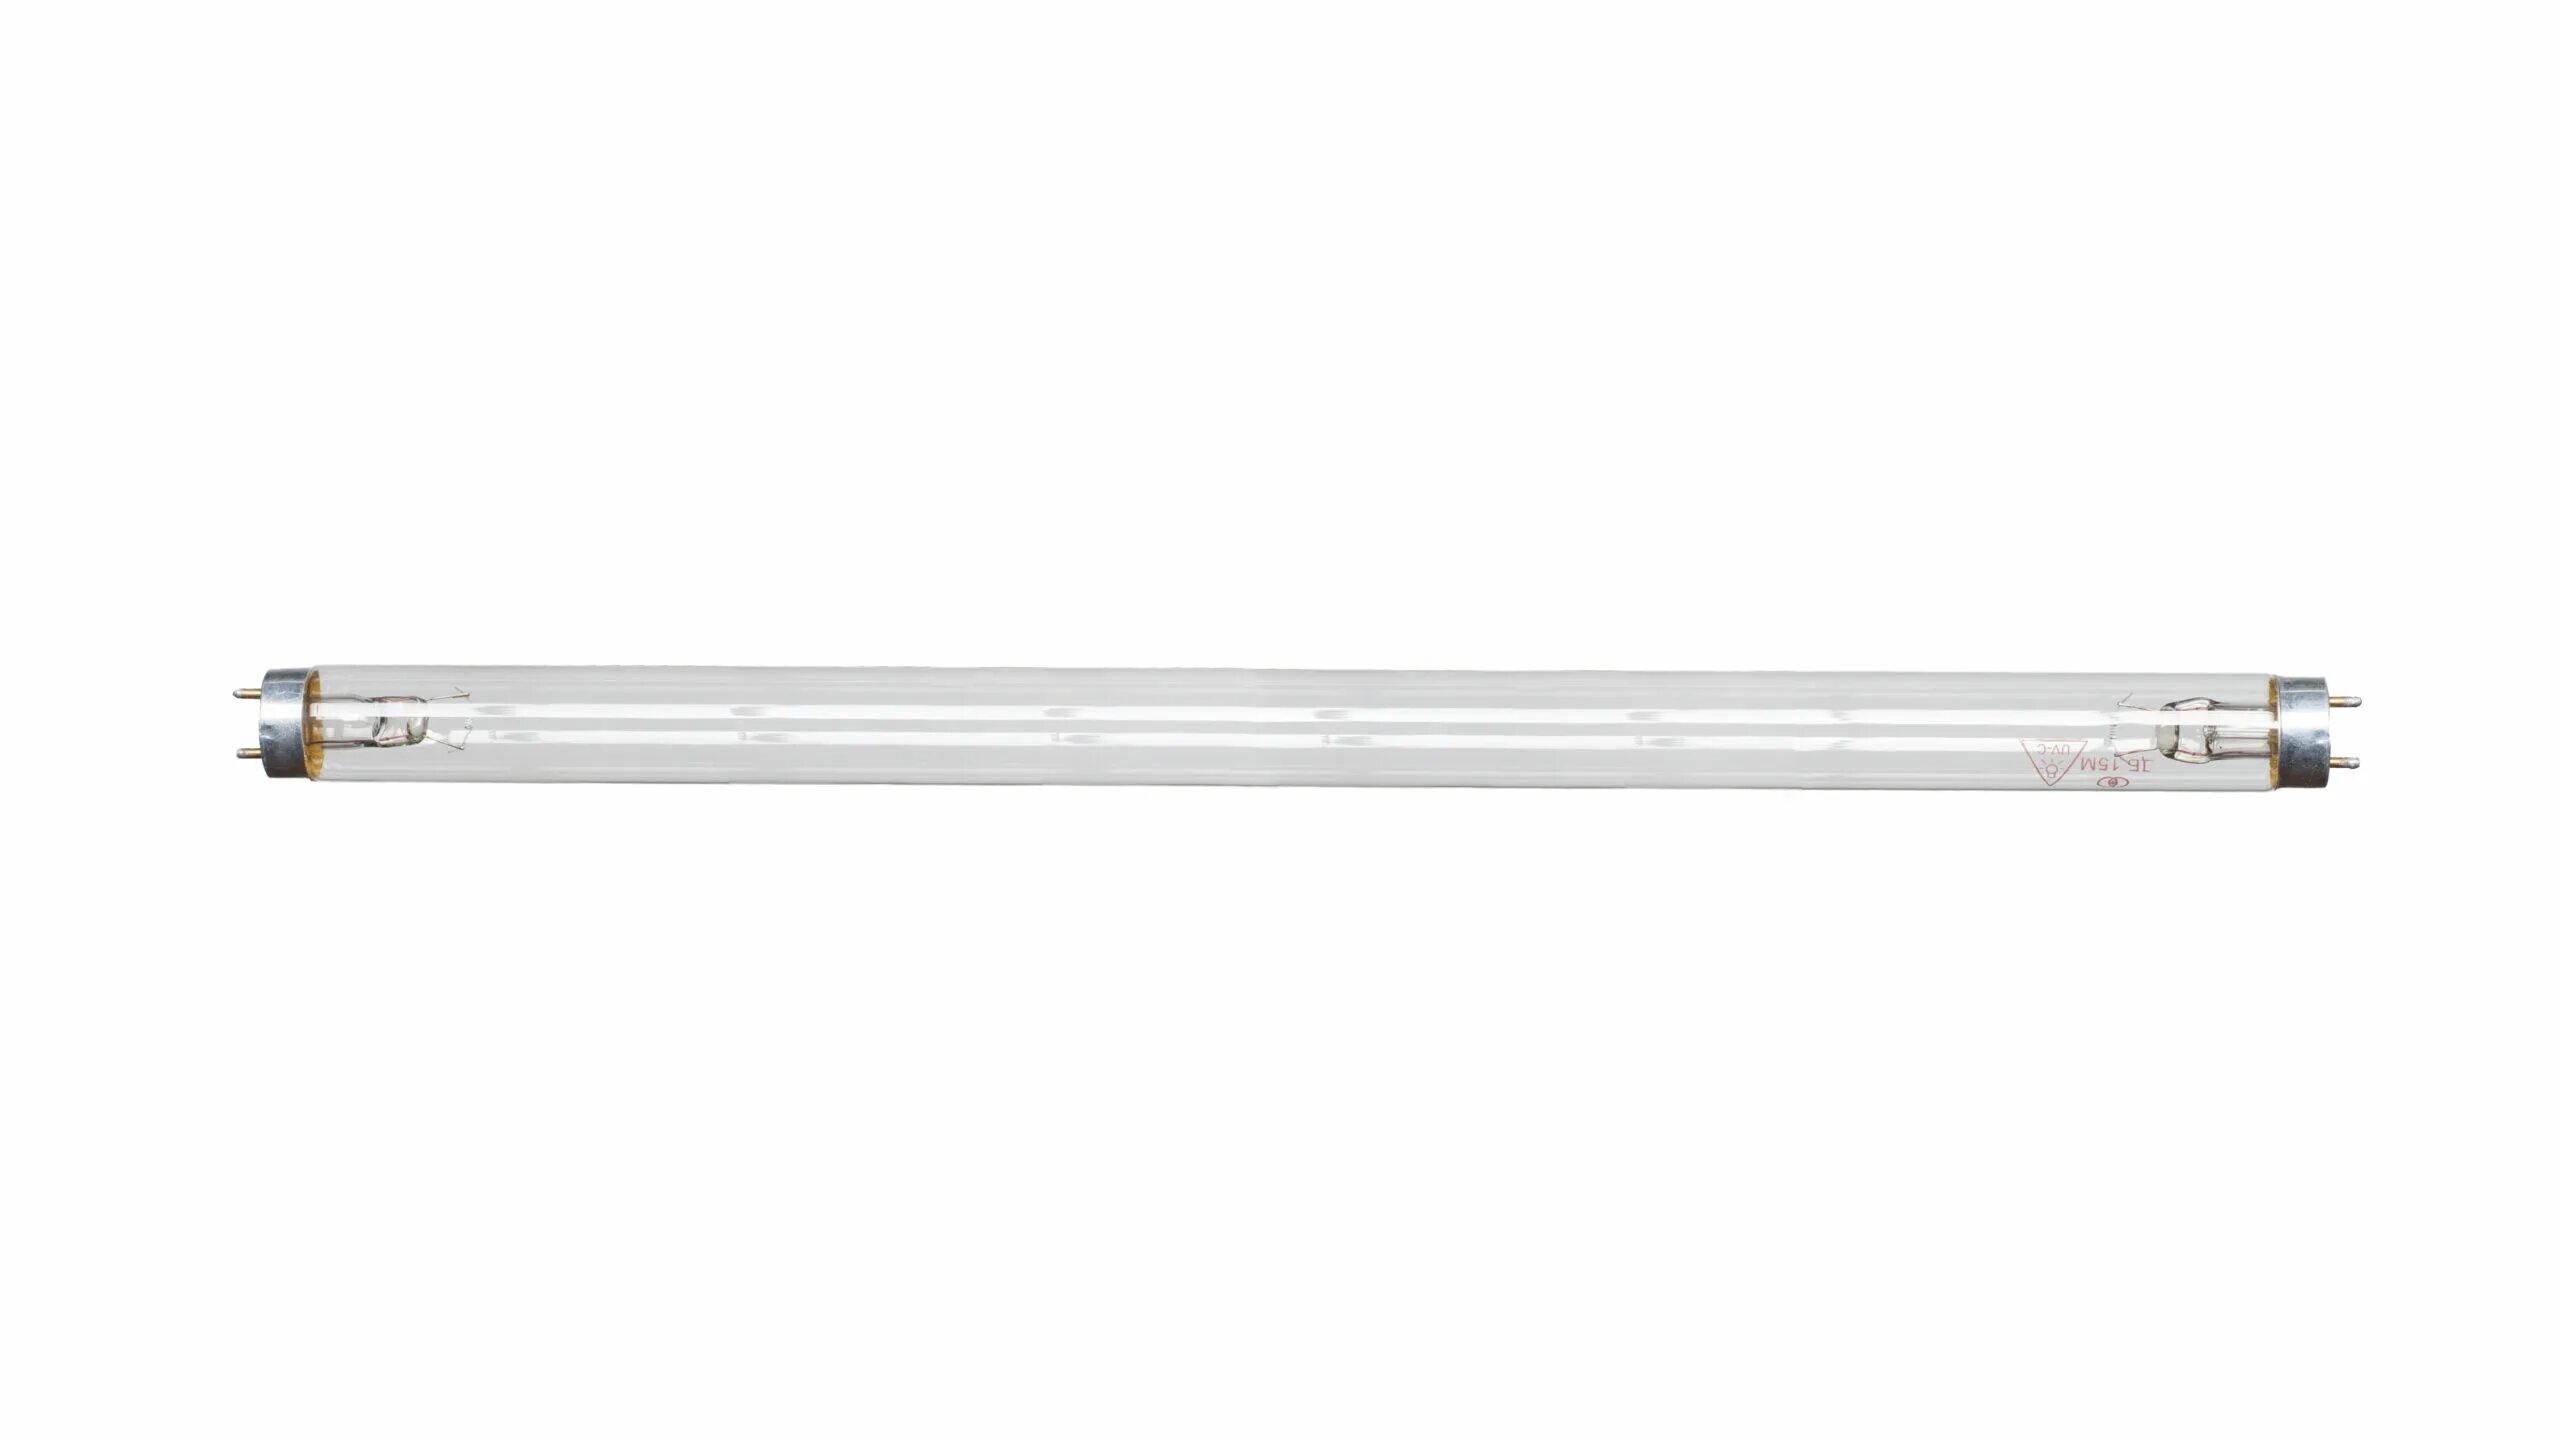 Лампа газоразрядная ртутная ДРЛ 400 e40 St световые решения 22098. УФ-лампа ДБ 75-2 (DB 75-2). Бактерицидная лампа Sweko SBL-t8-UVC-15w-g13-bg. ДБ-15 g13 Luxe бактерицидная лампа. Децибел 15